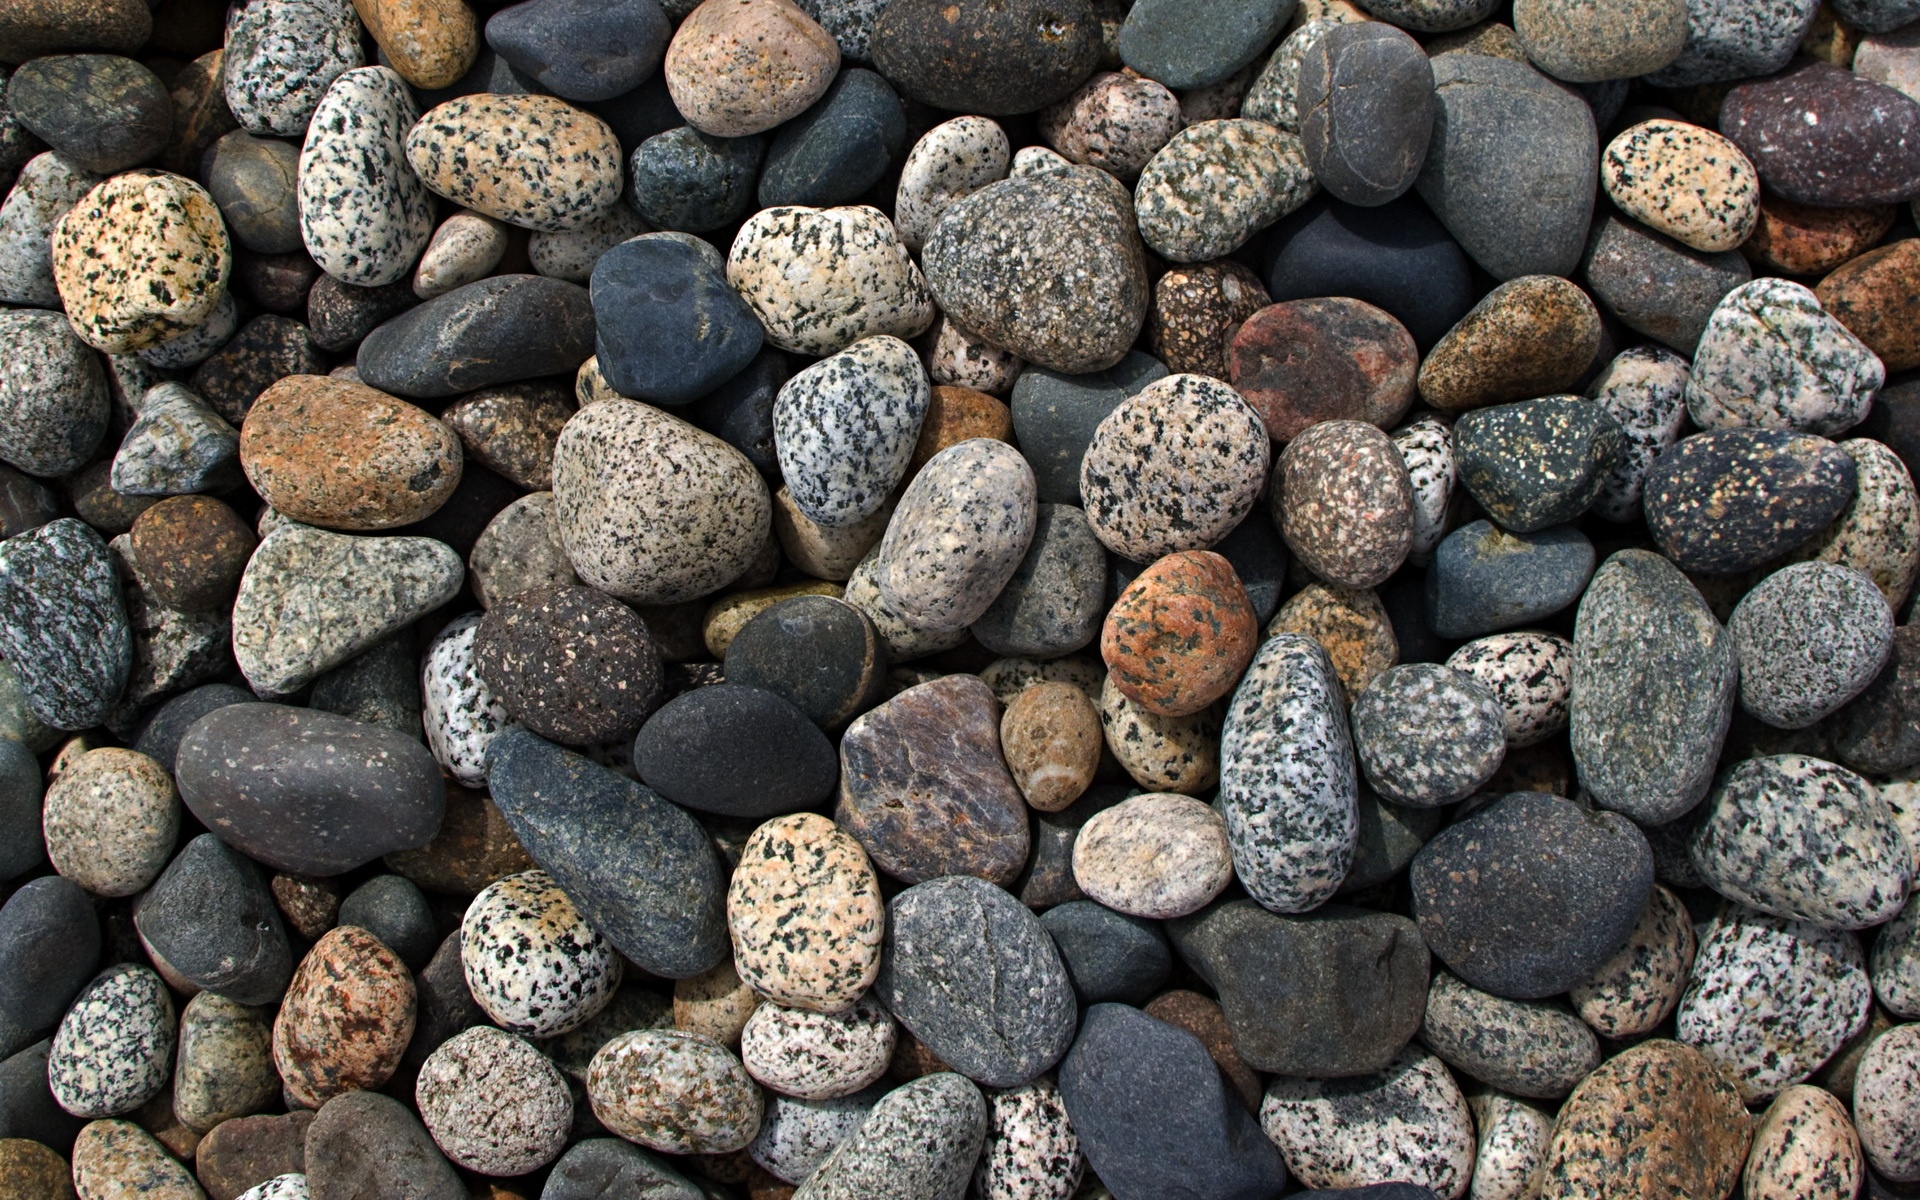 Their stones